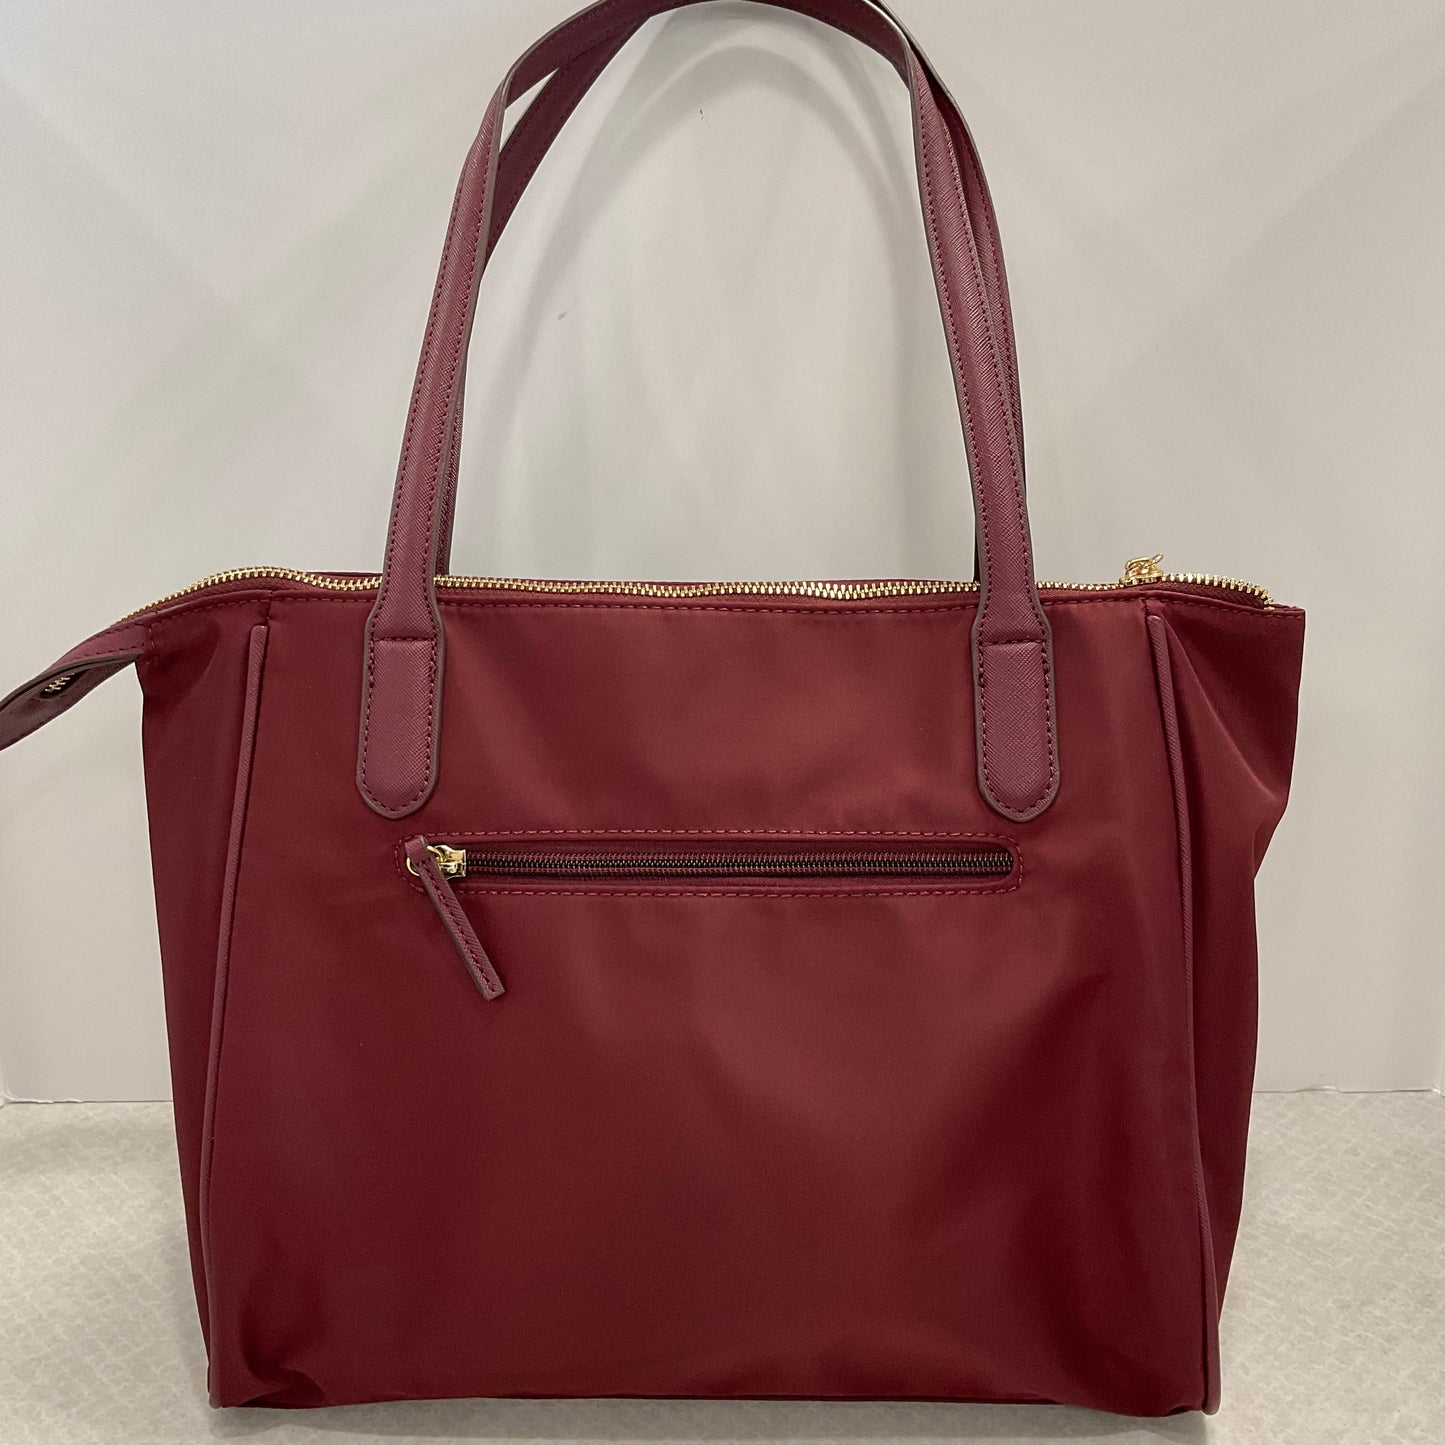 Handbag By Giani Bernini  Size: Medium